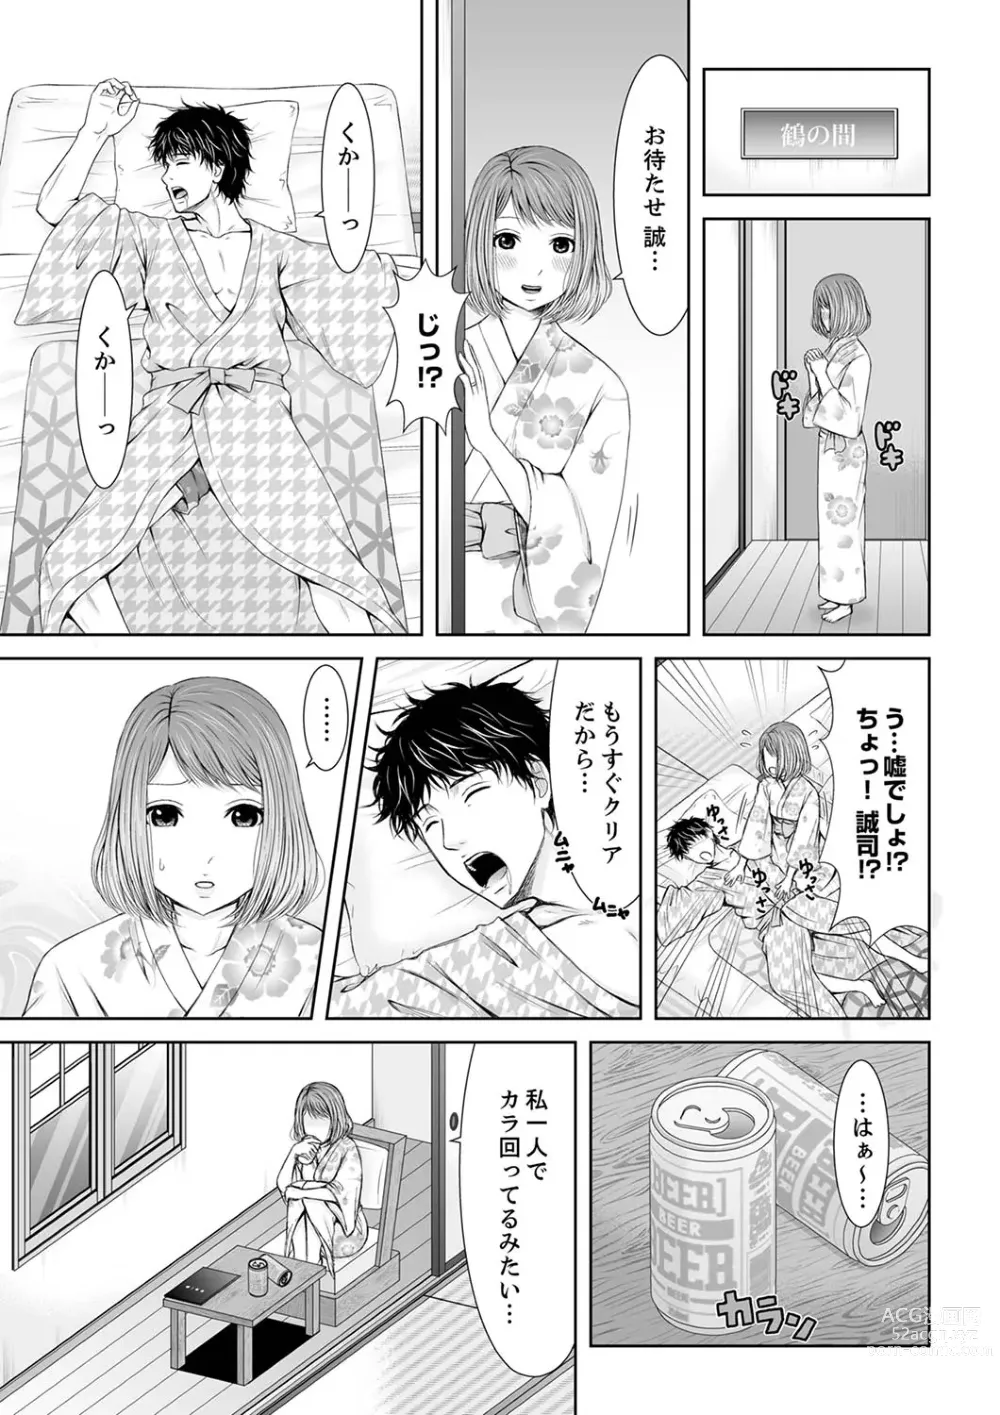 Page 7 of manga 整体師にジらされ続けた妻～夫には言えない濡れイキマッサージ【デラックス版】